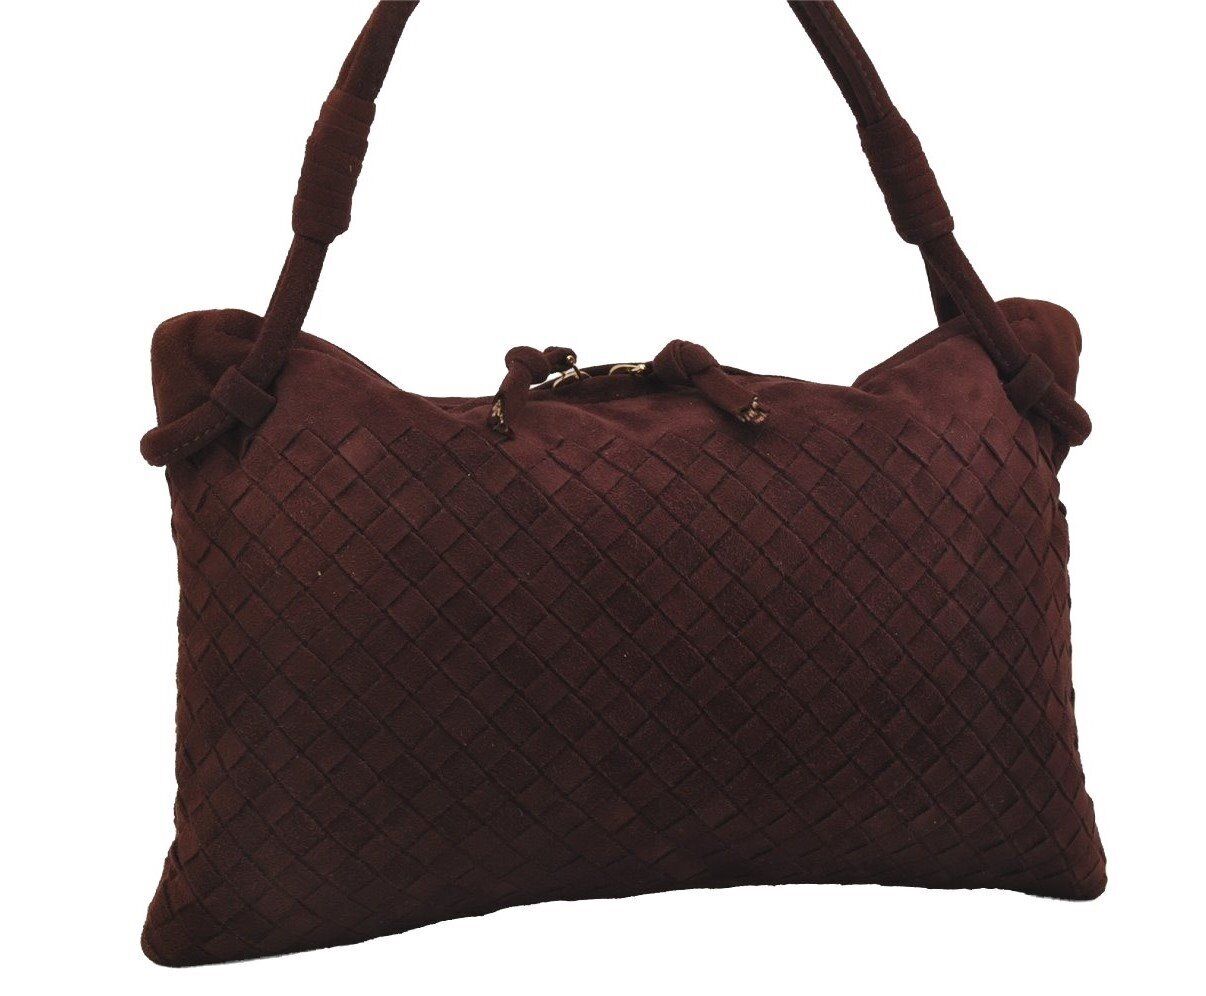 Authentic BOTTEGA VENETA Vintage Suede Hand Bag Purse Bordeaux Red 2709J